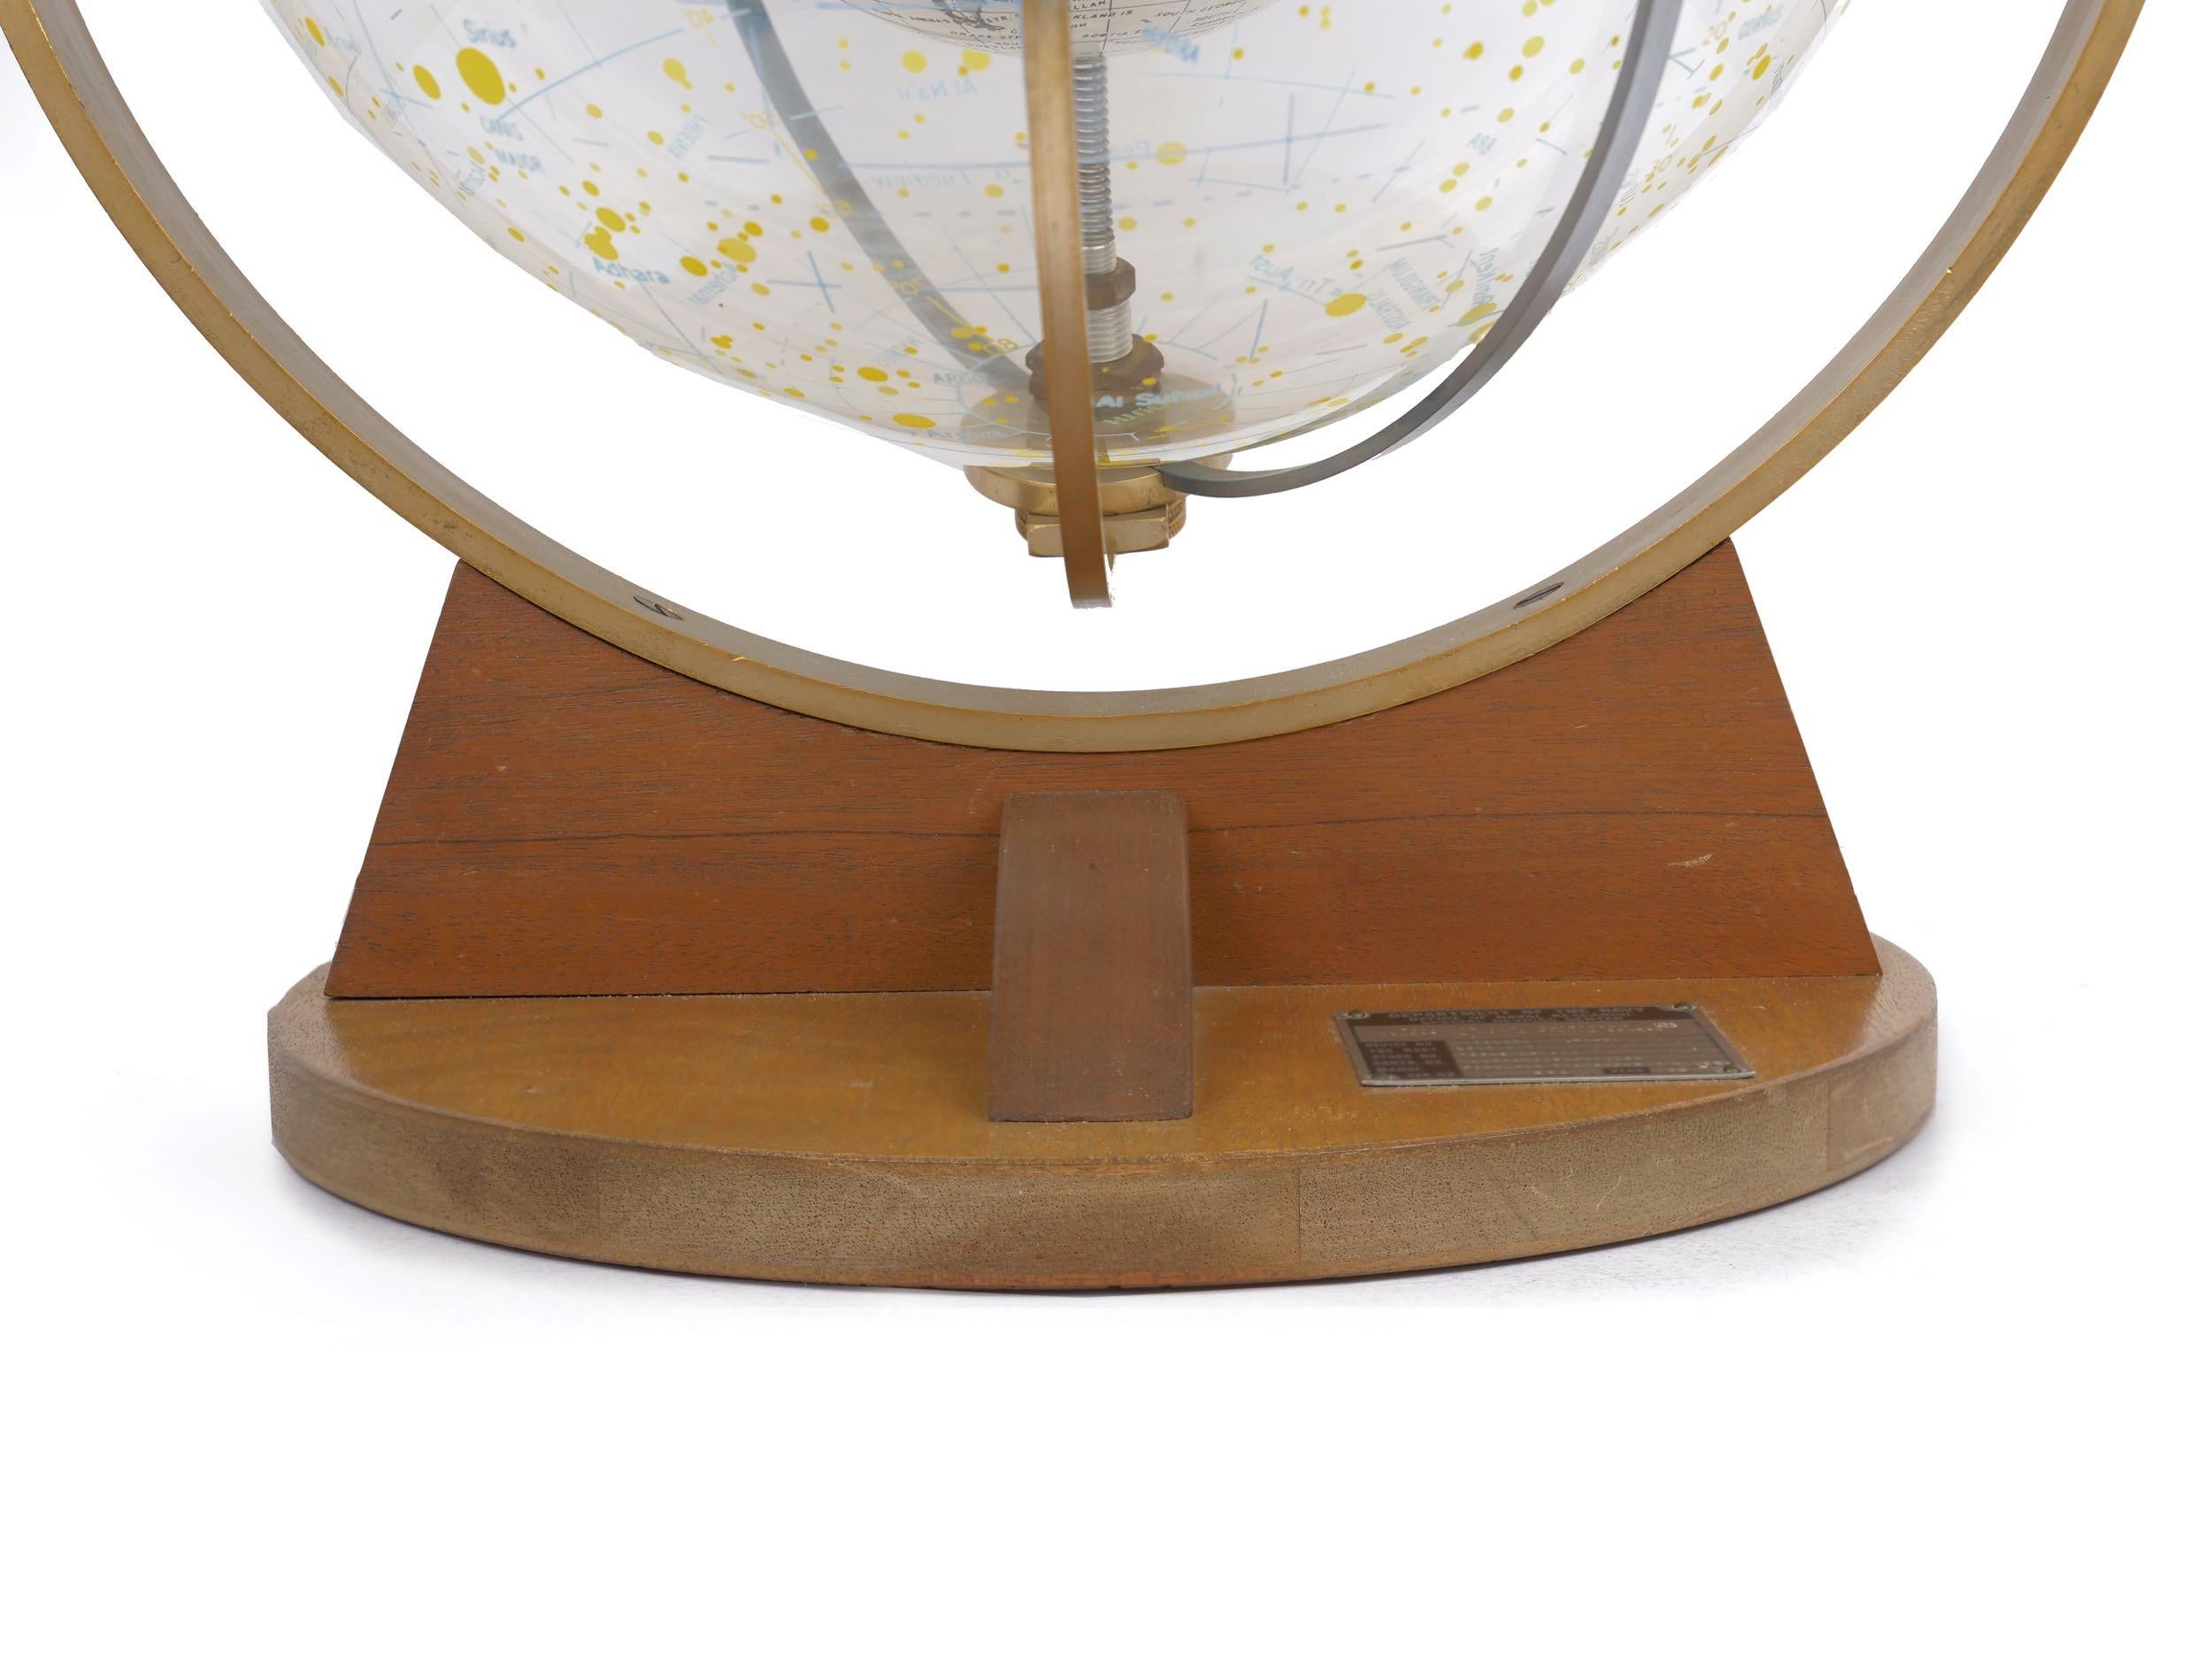 Farquhar Celestial Navigation Armillary Sphere Globe for Dept. of Navy 4